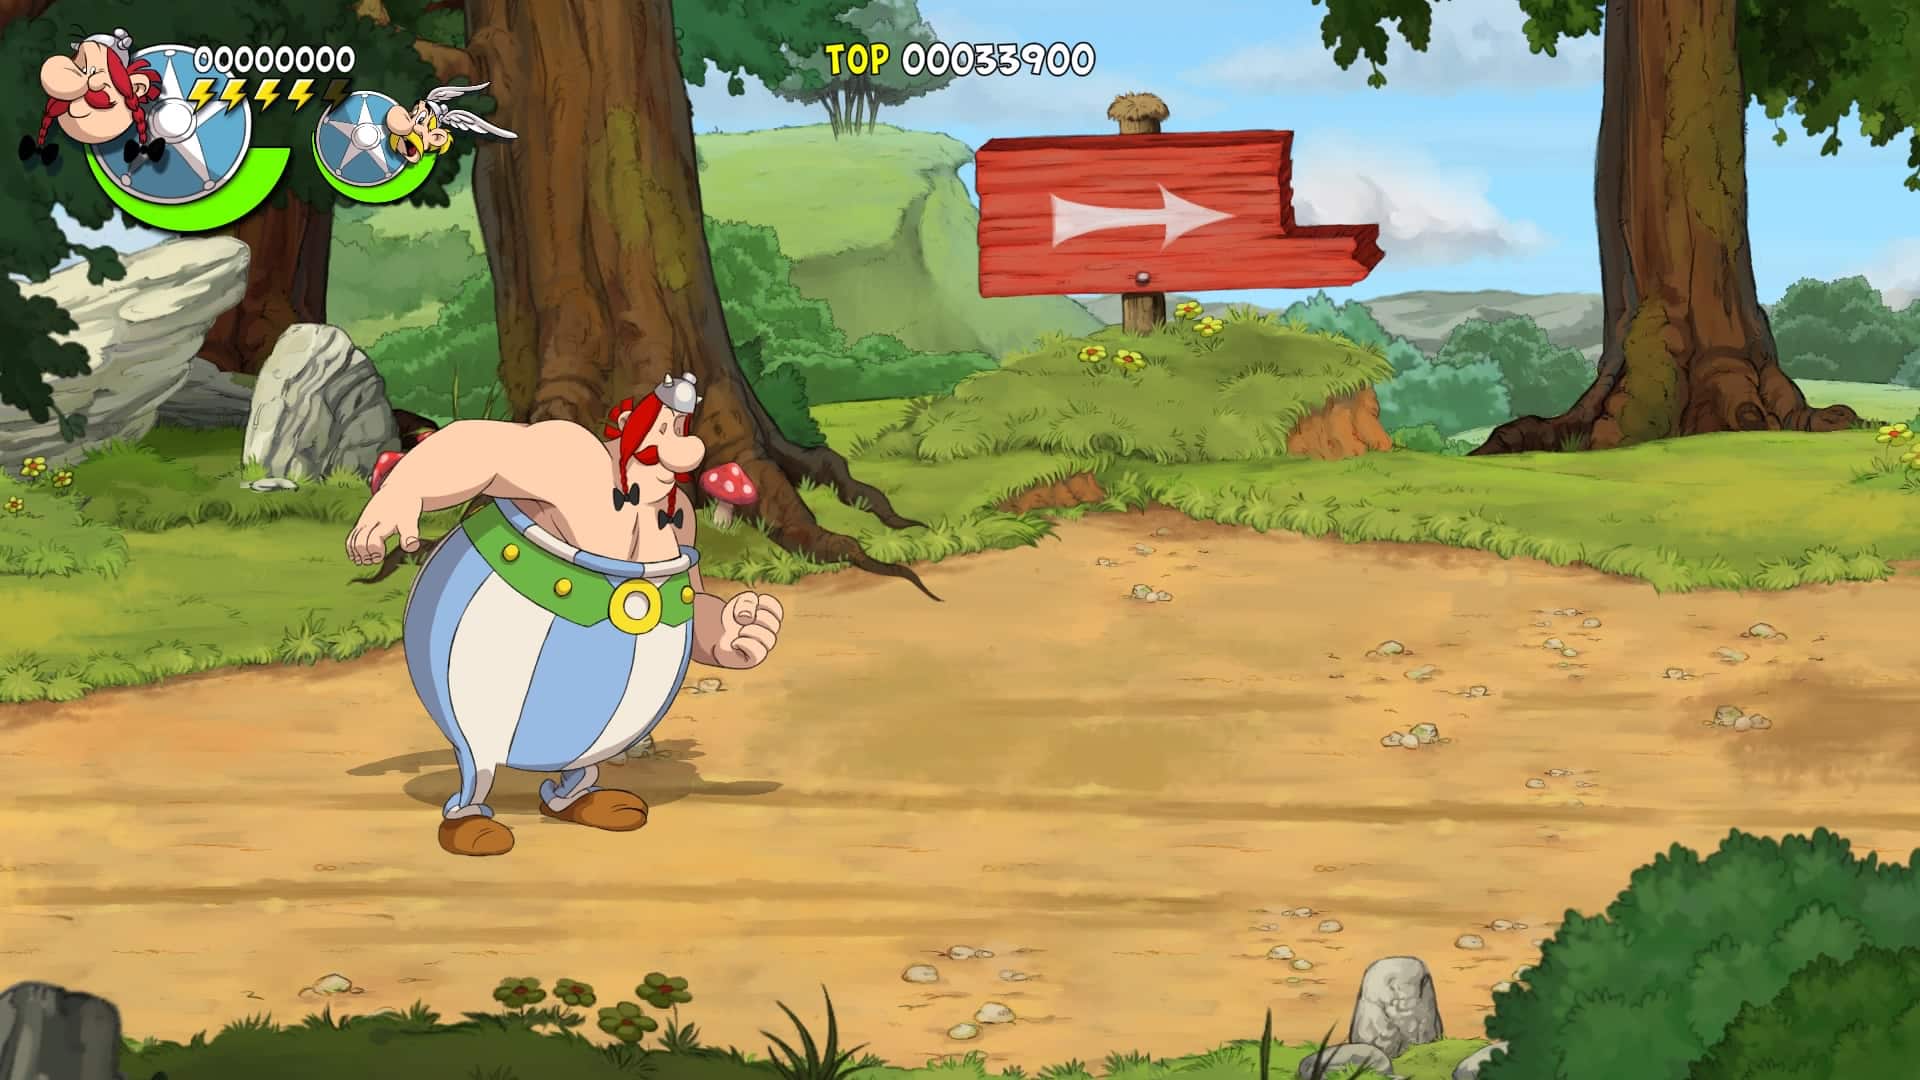 Asterix-_-Obelix-Slap-Them-All